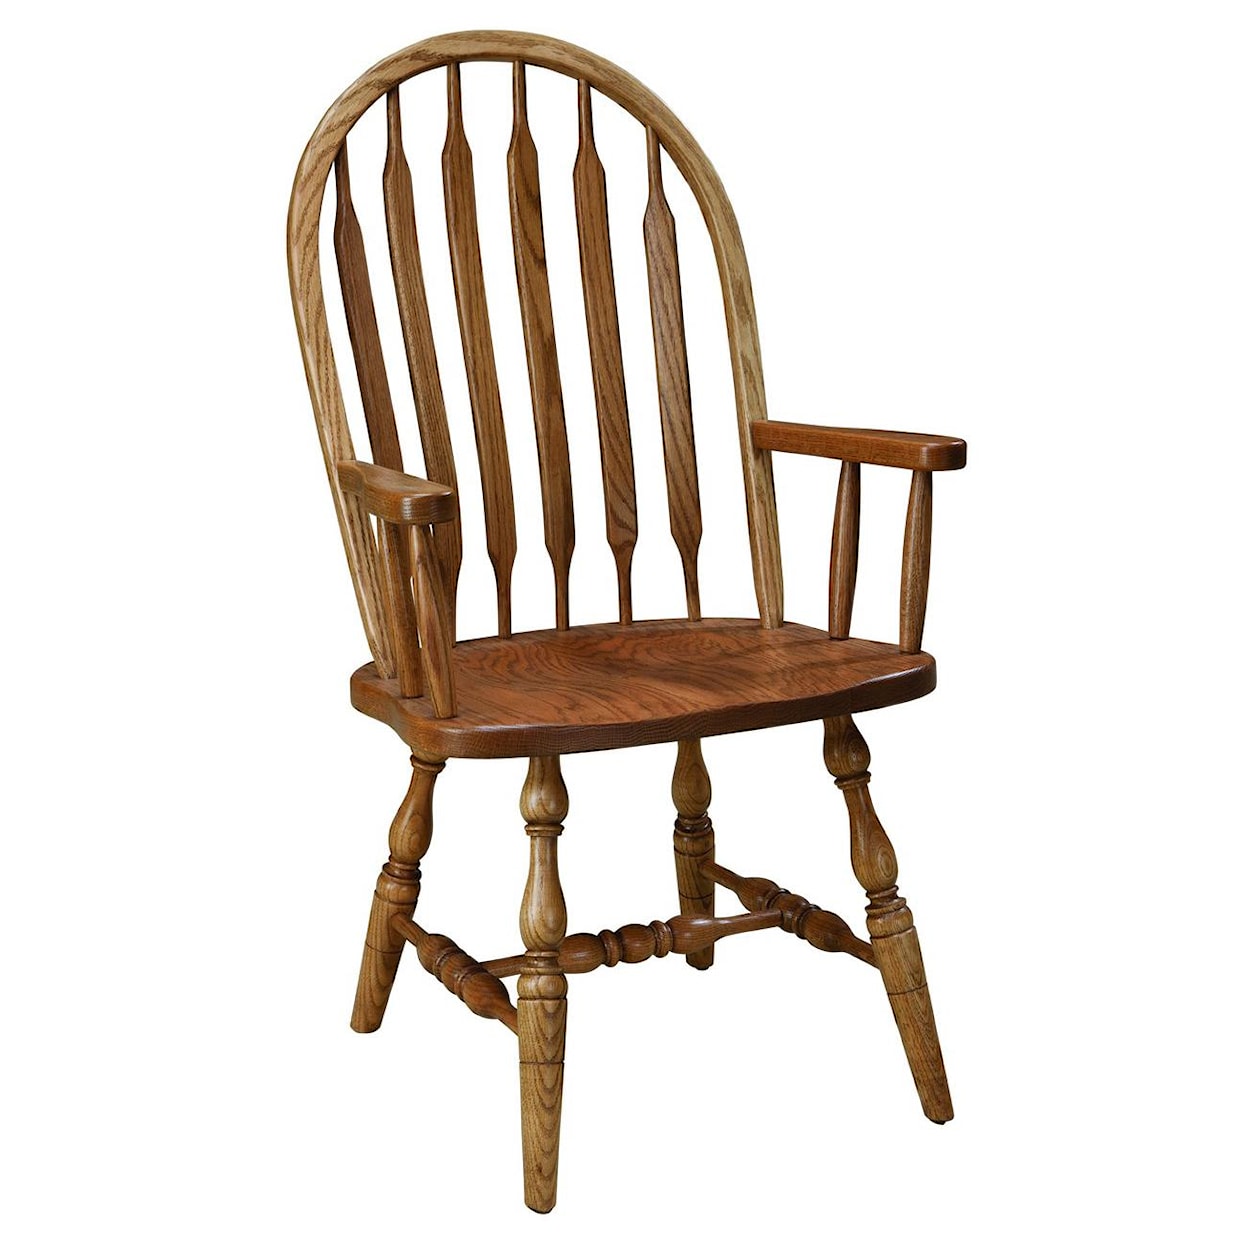 Mavin Jr. Bowback Group Customizable Arm Chair